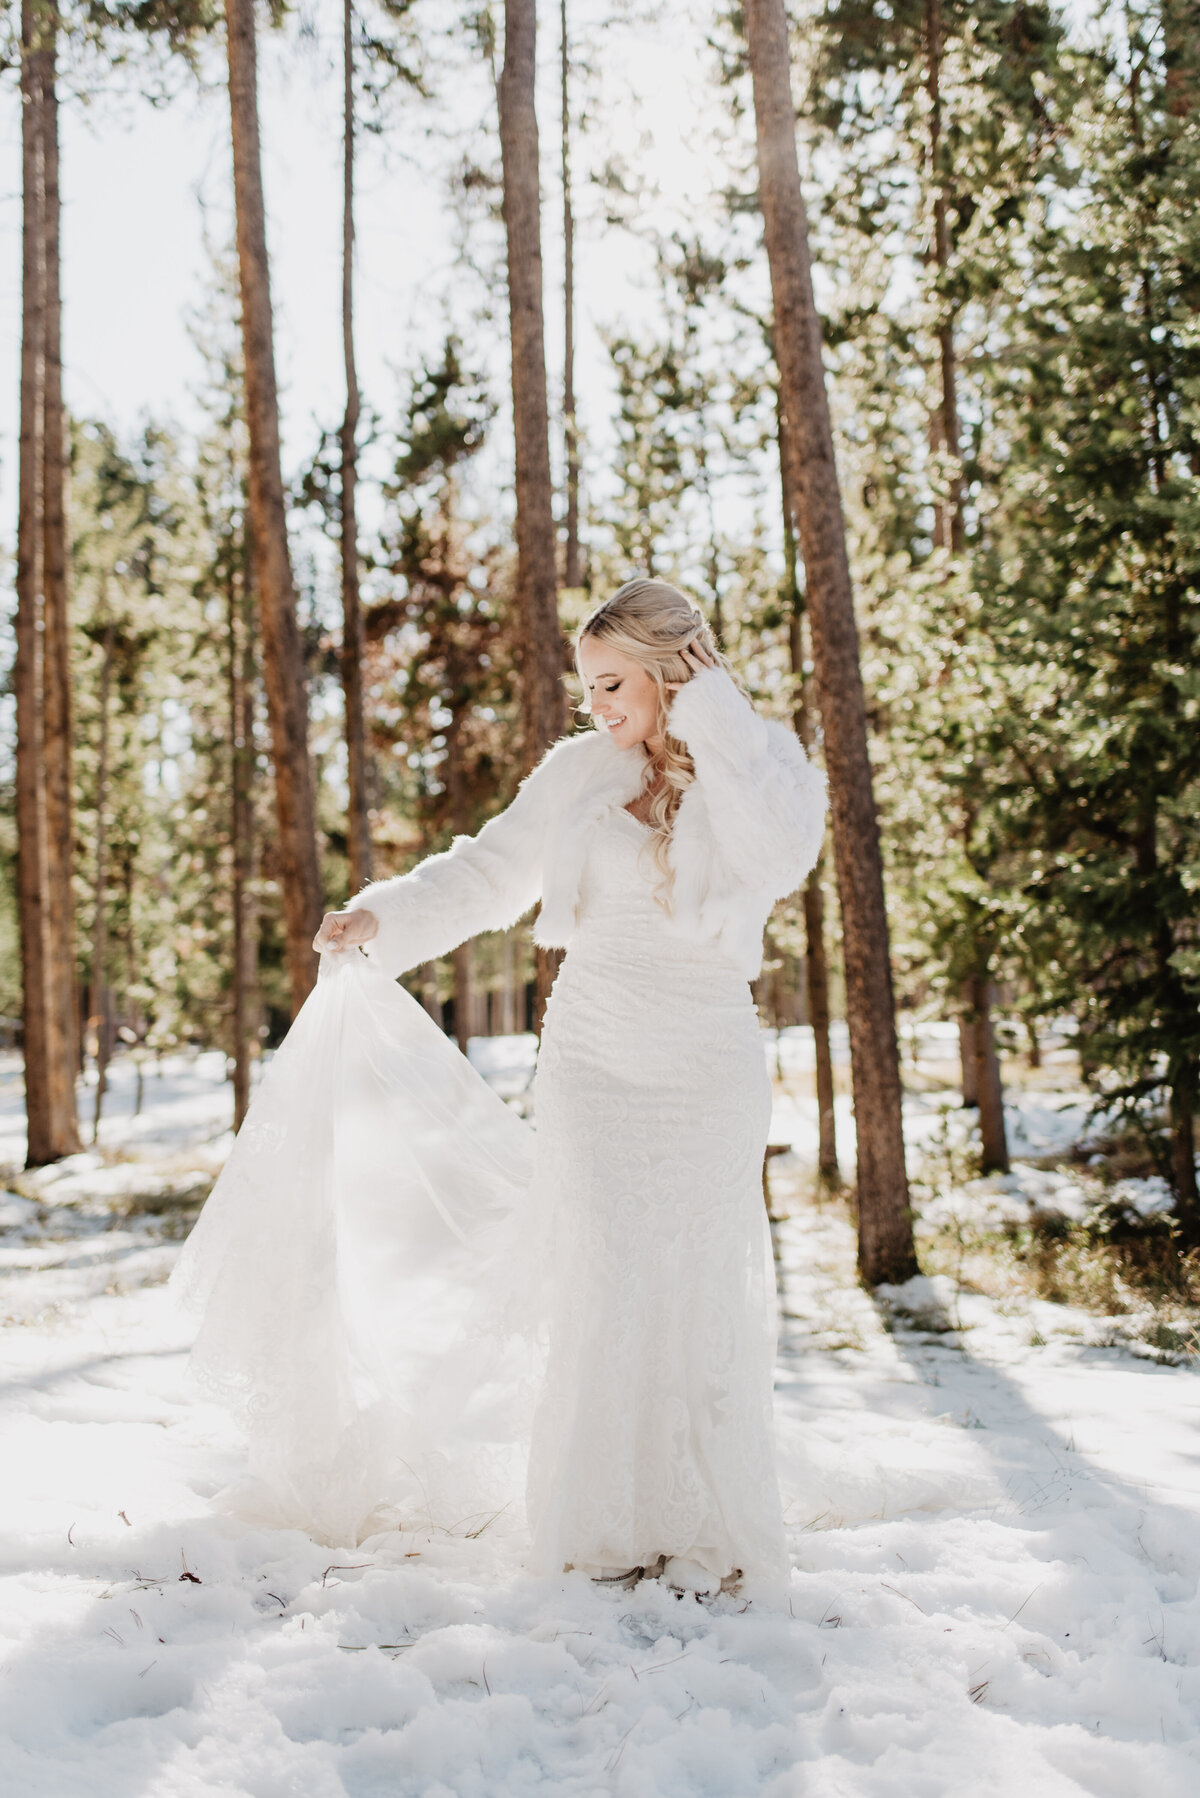 Jackson Hole Photographers capture bride holding dress